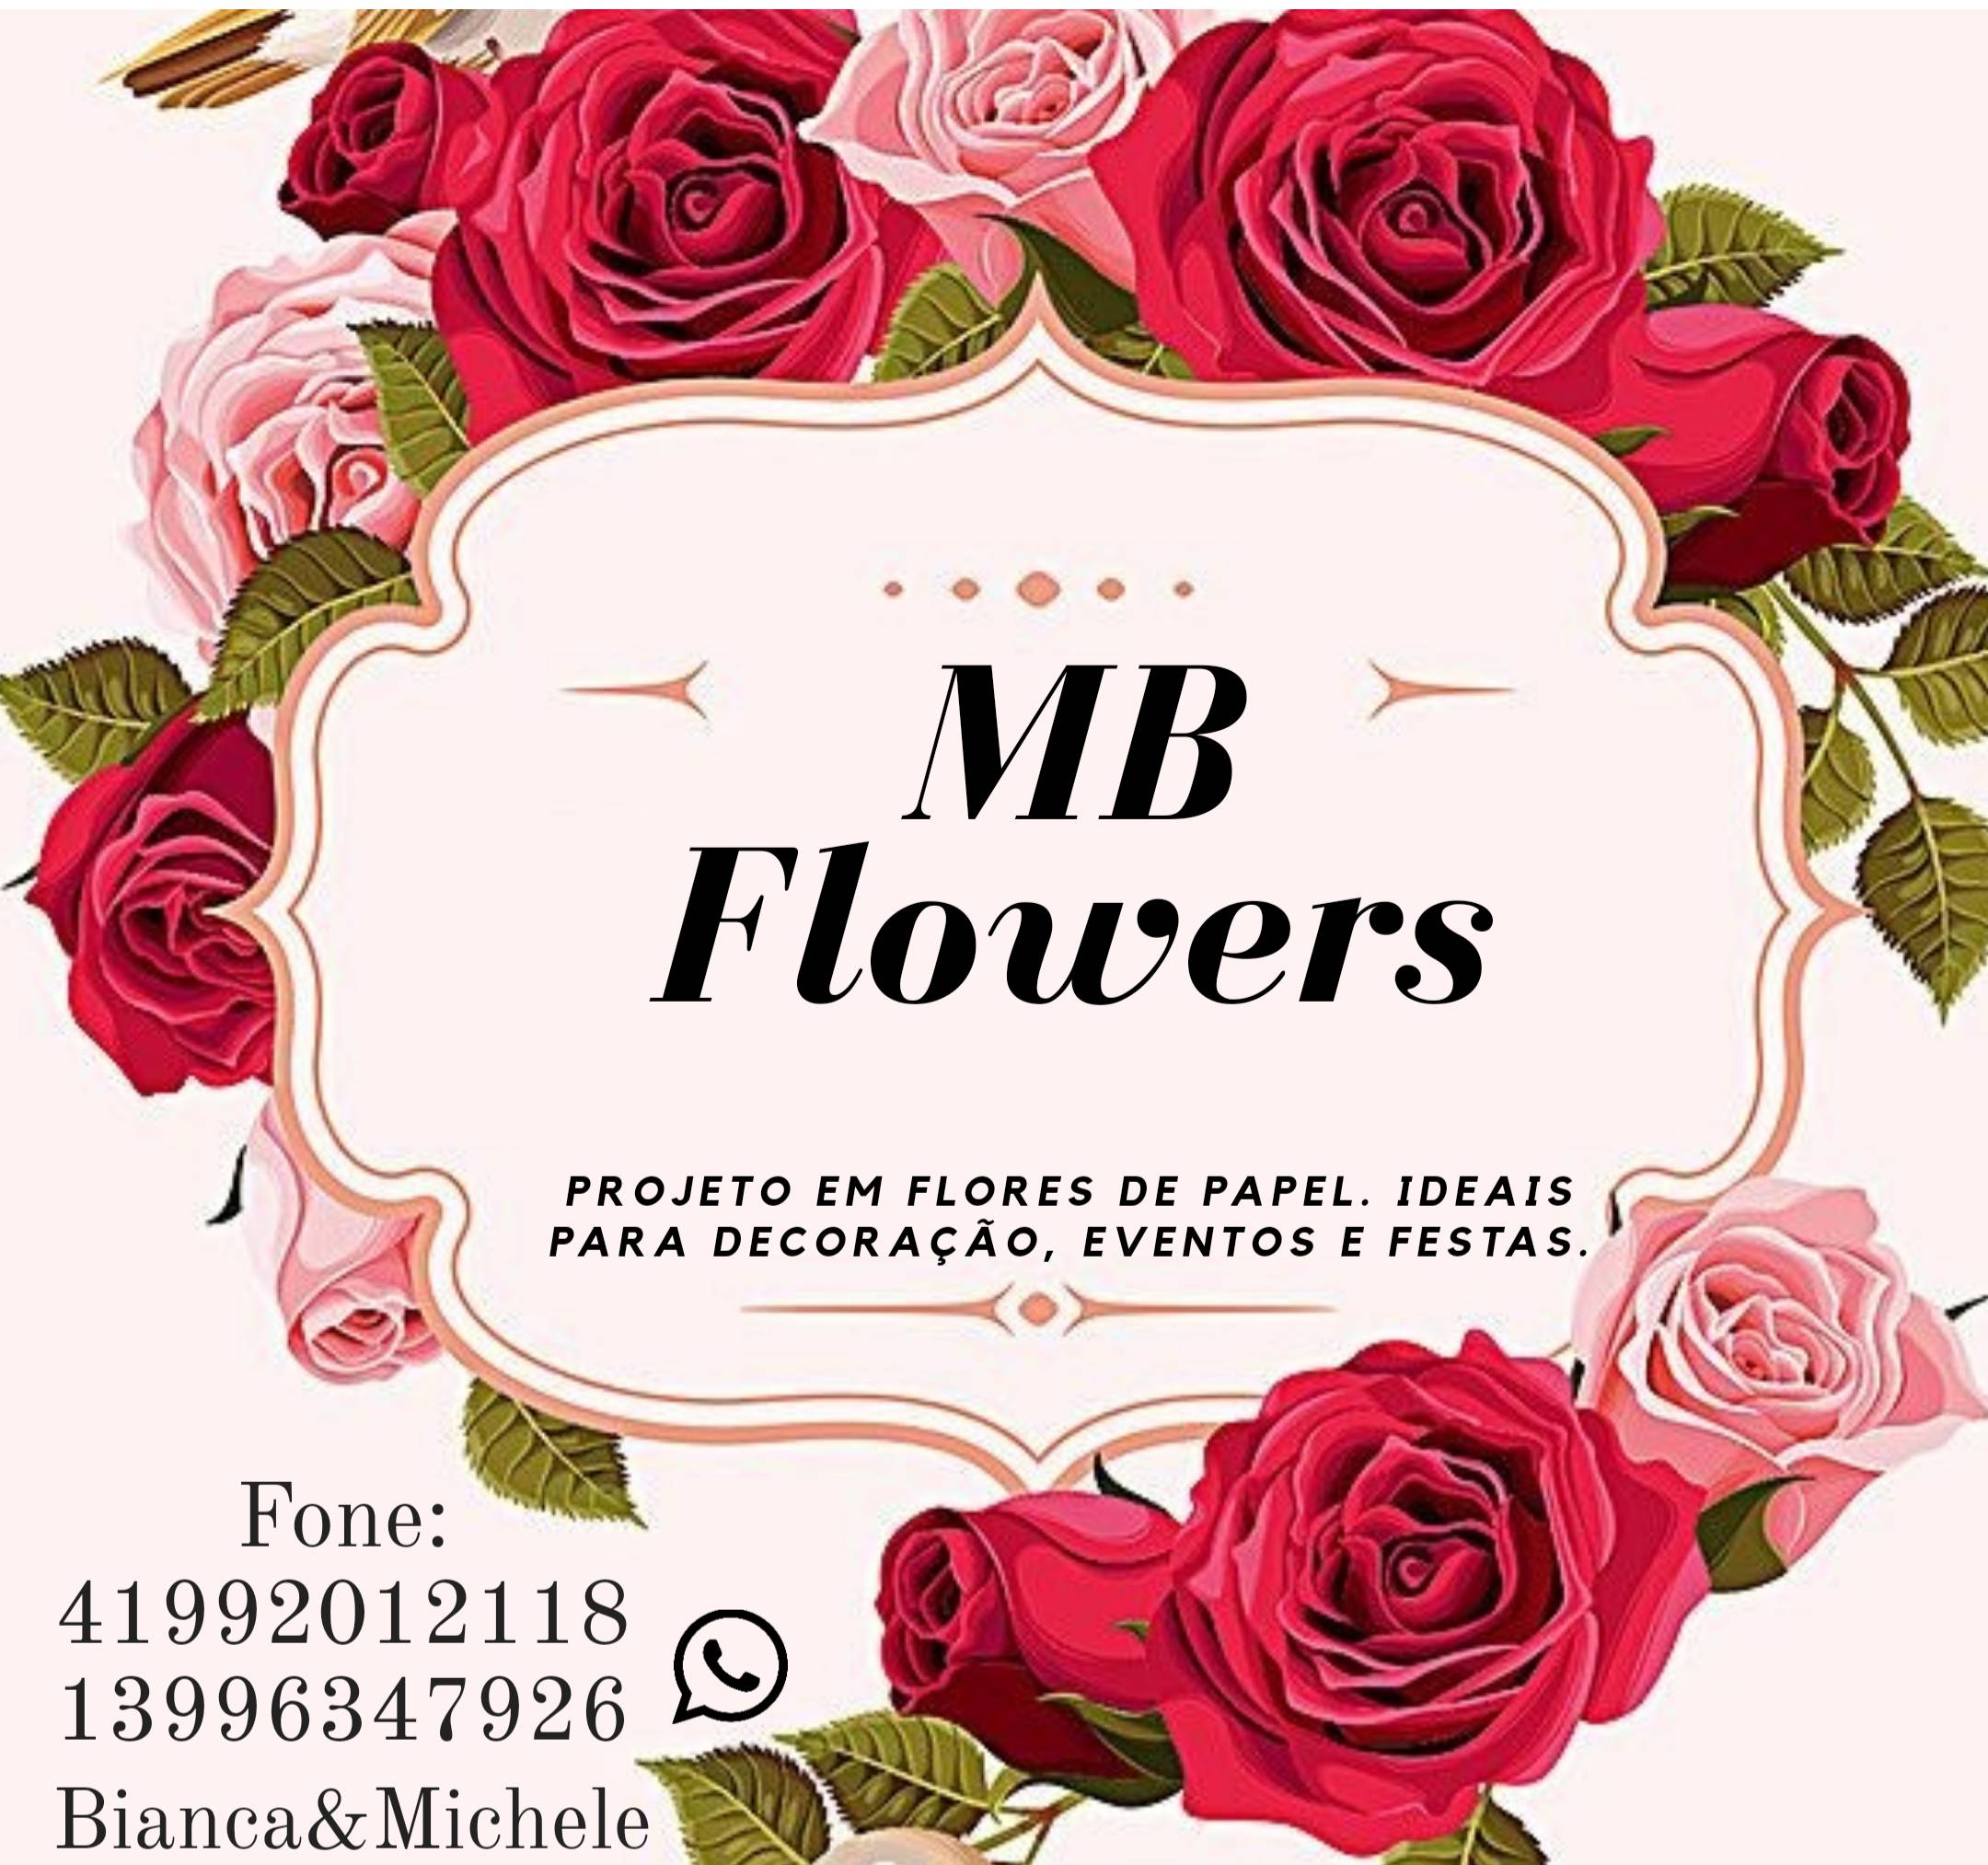 MB Flowers Projeto em Flores de Papel